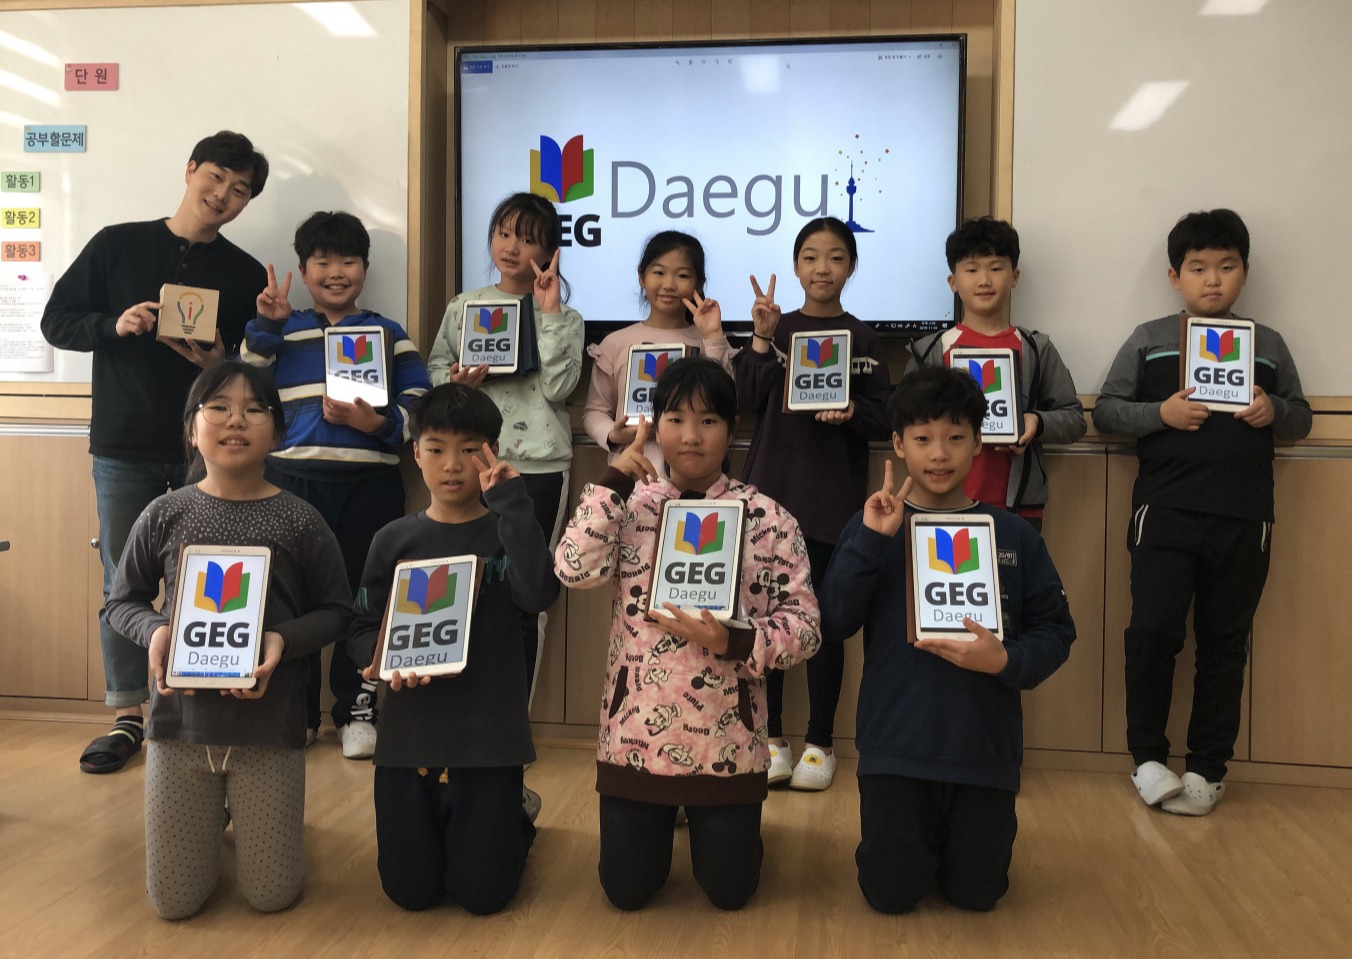 대구시교육청이 전국 시도교육청 중 최초로 구글 공식 교육자 그룹인 GEG 대구를 설립한다.